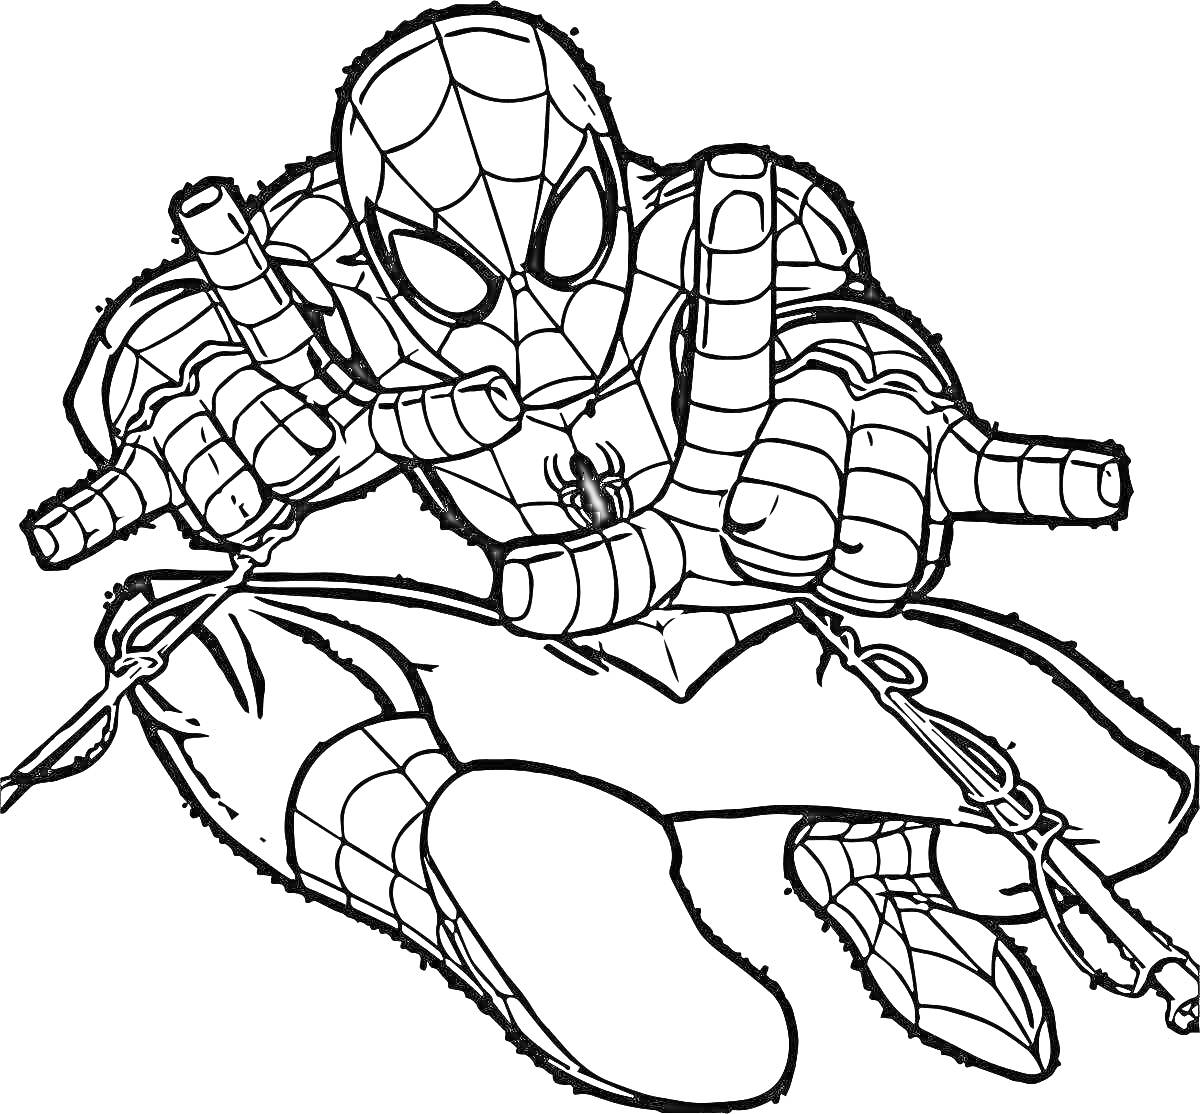 Человек-паук выпускает паутину, в динамичной позе с согнутыми ногами, маска с глазками, костюм с паутинным рисунком, символ паука на груди.